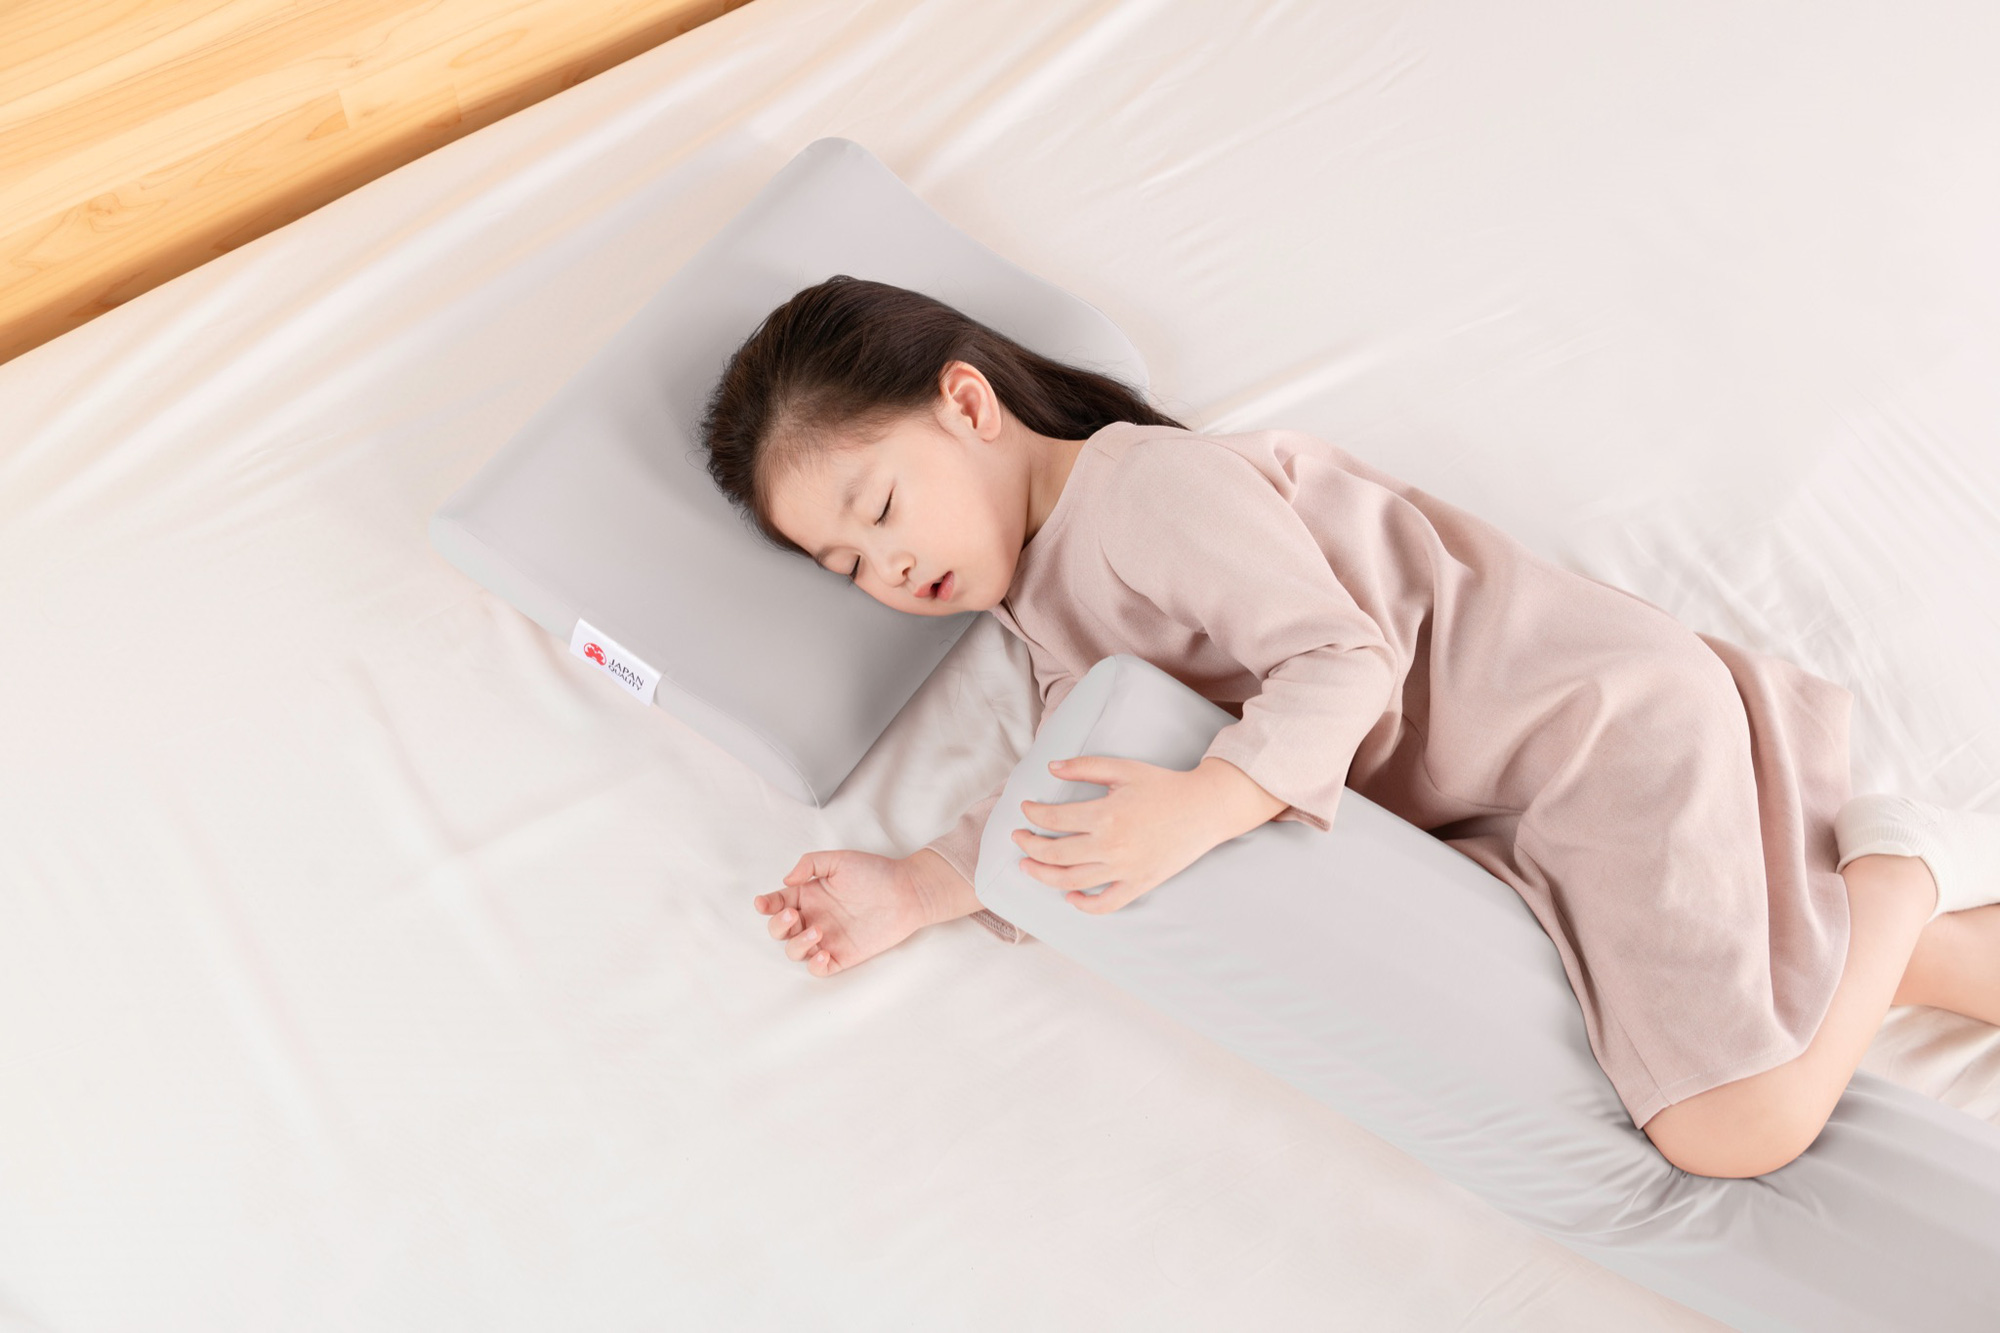 AEROFLOW ra mắt sản phẩm chăm sóc giấc ngủ cho bé - Ảnh 3.